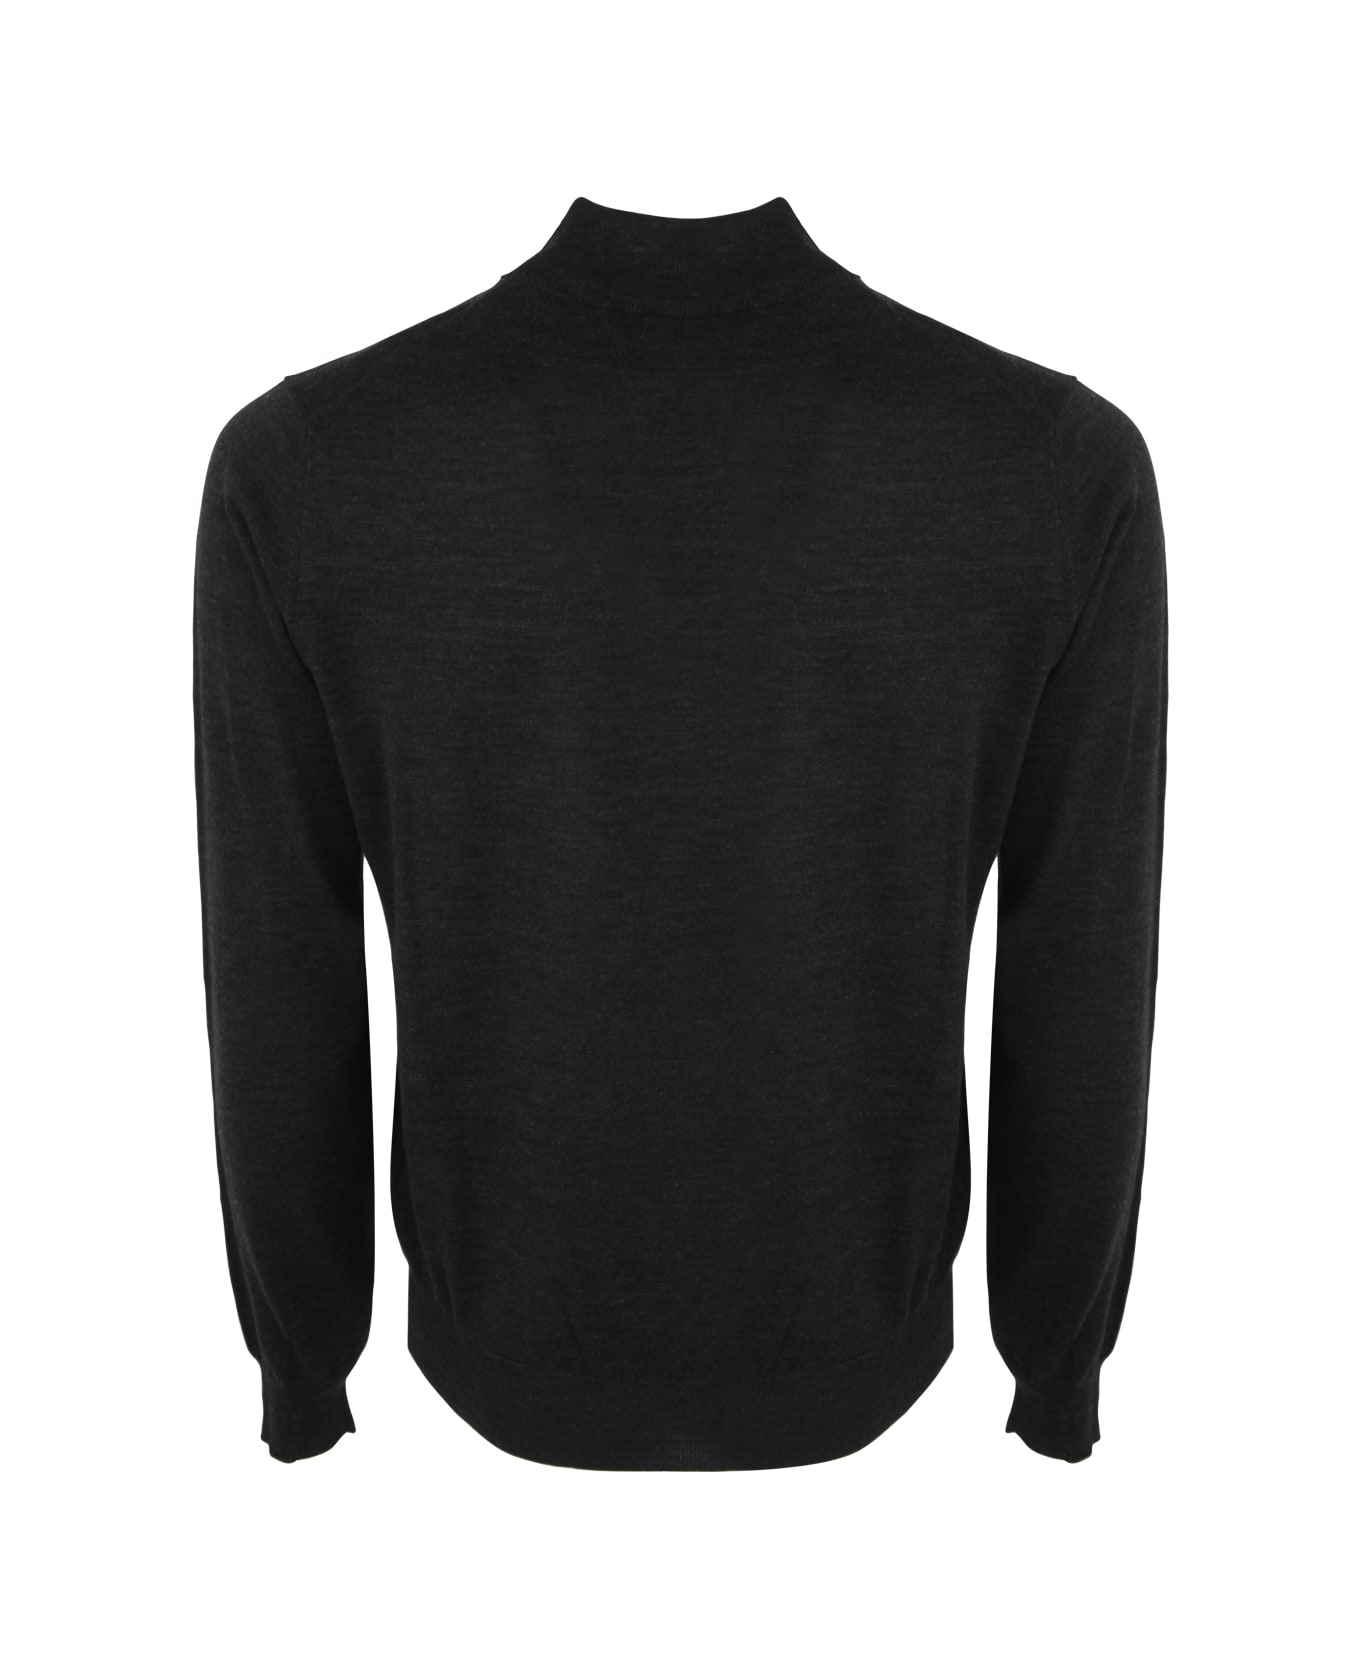 Filippo De Laurentiis Royal Merino Long Sleeves High Neck Sweater - Anthracite